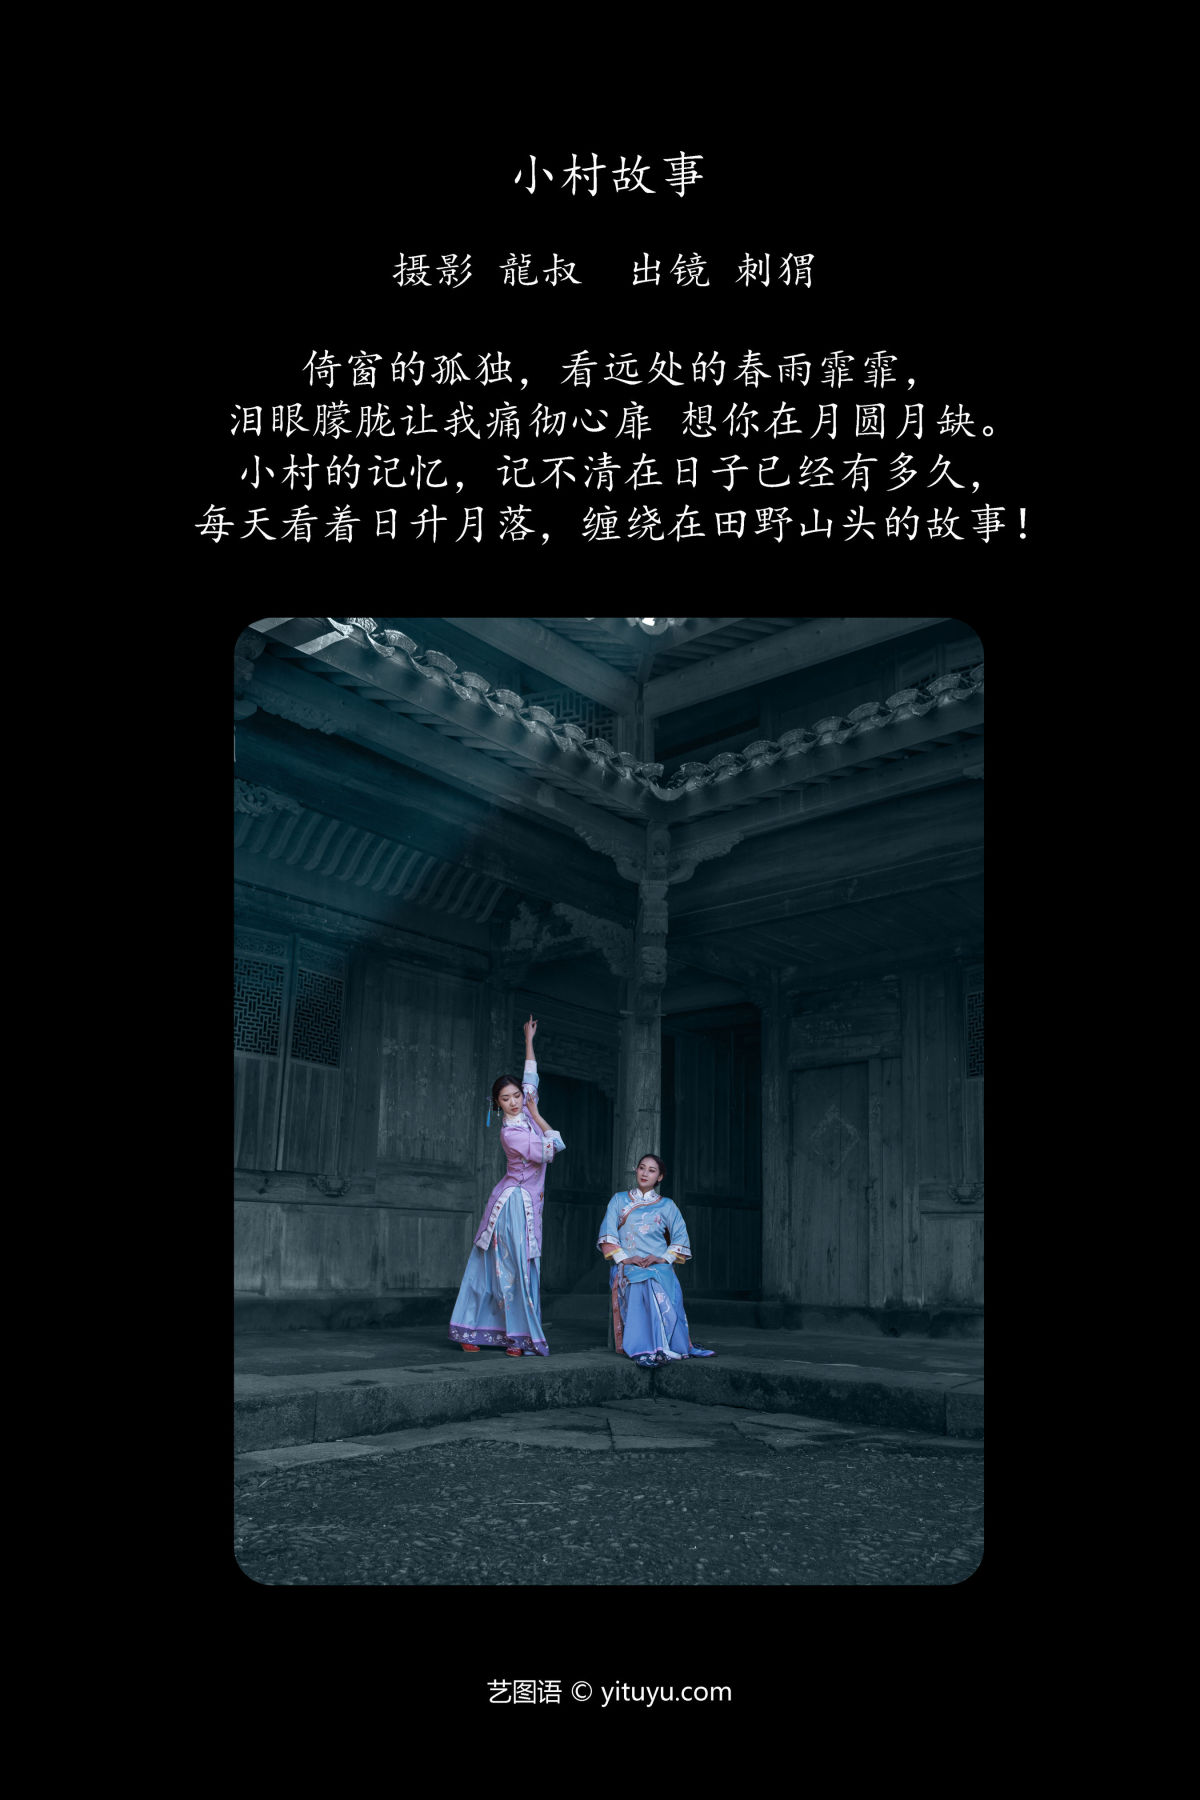 龍叔_刺猬《小村故事》美图作品图片2